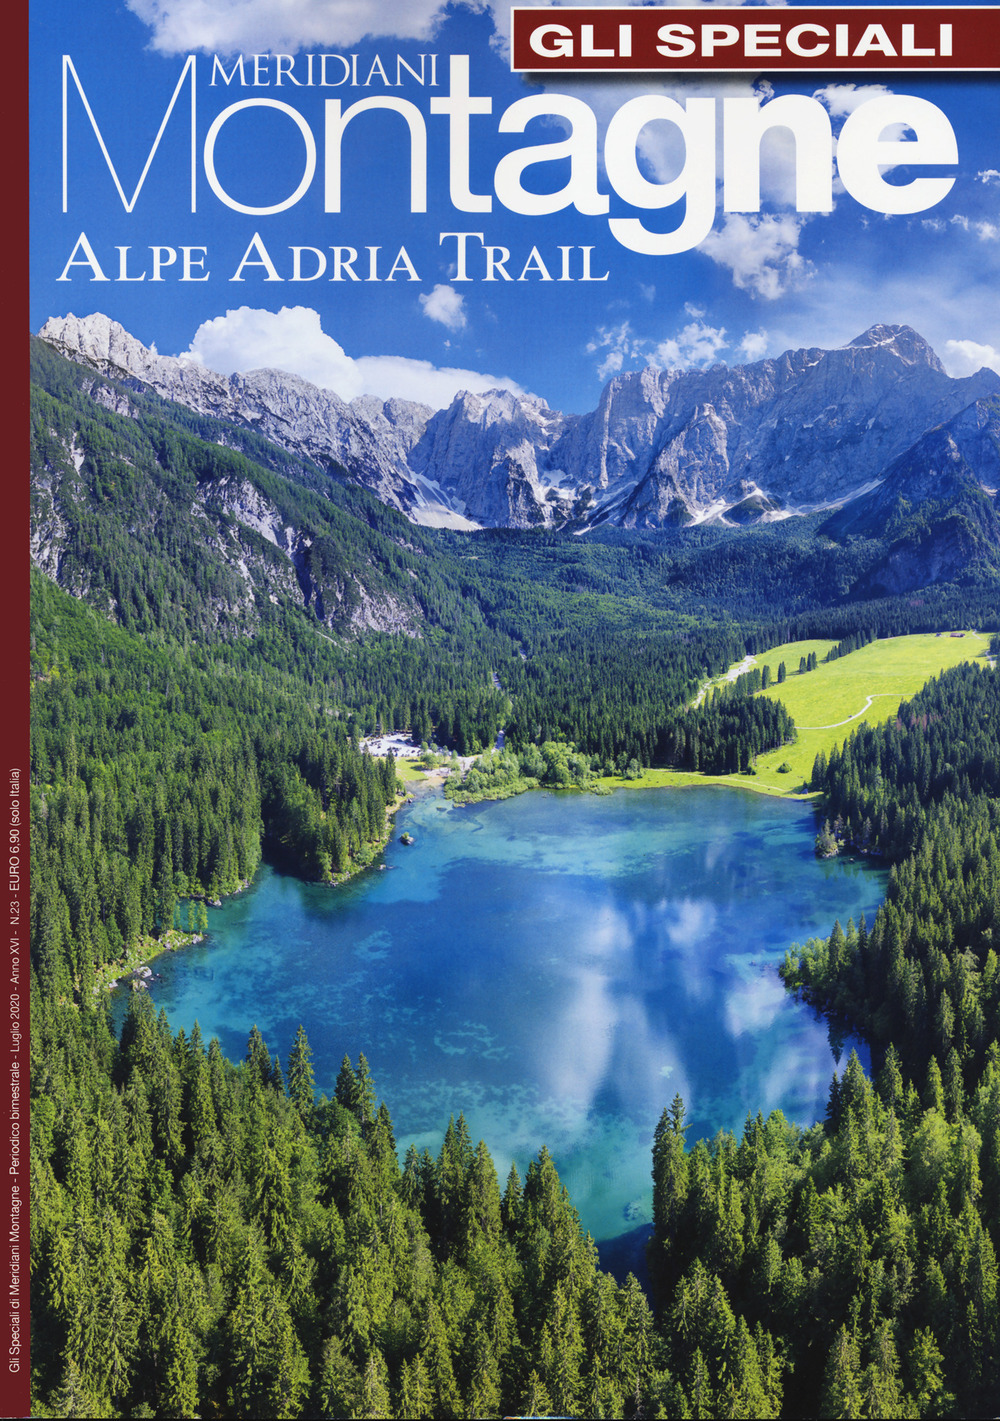 Alpe Adria. Con Carta geografica ripiegata